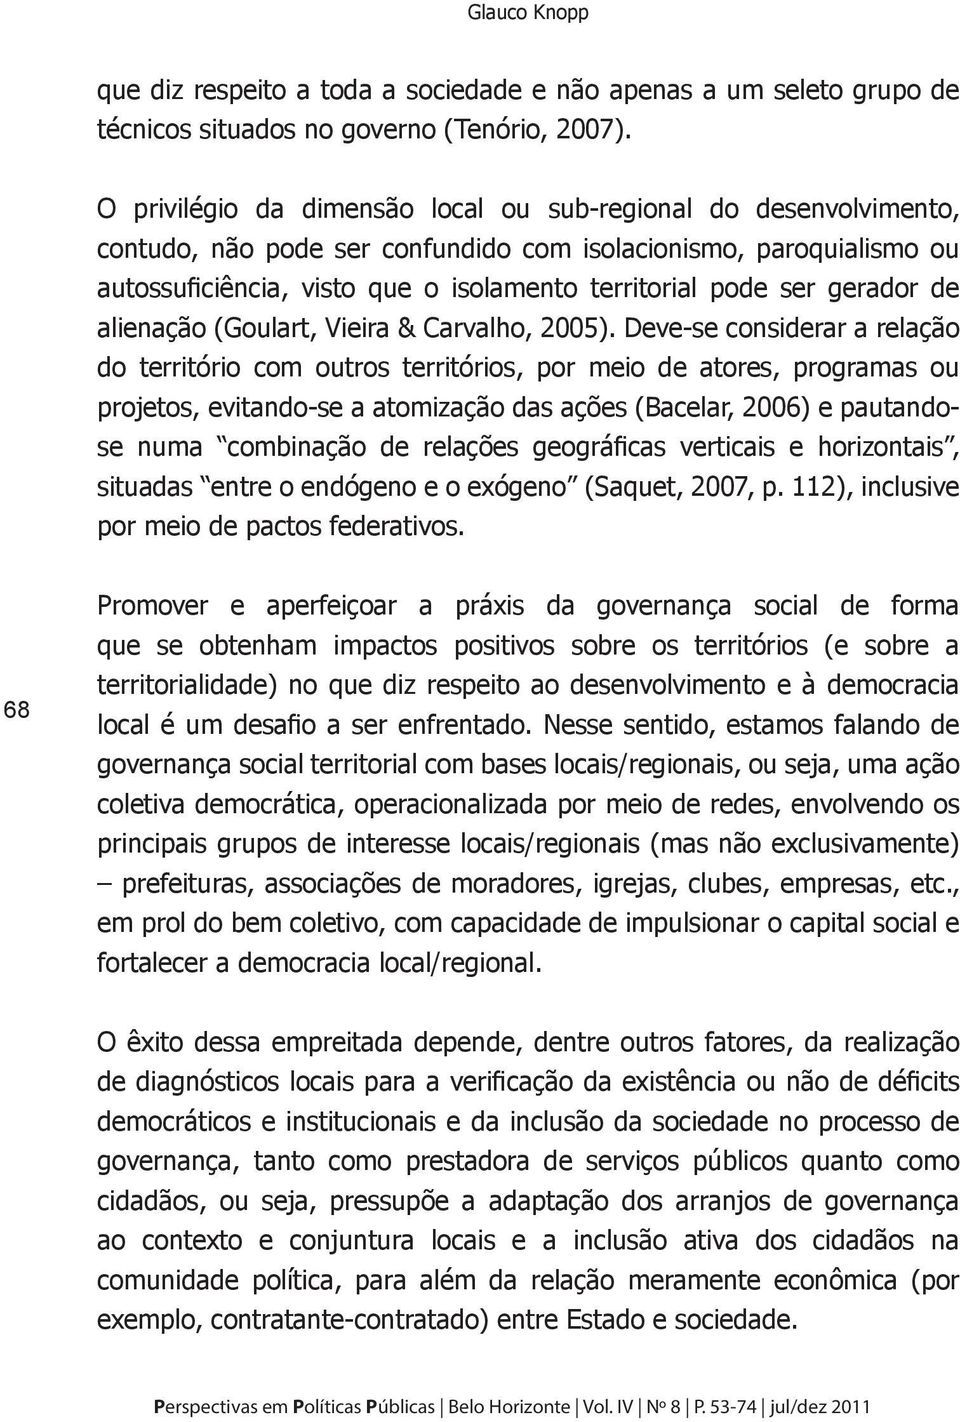 gerador de alienação (Goulart, Vieira & Carvalho, 2005).